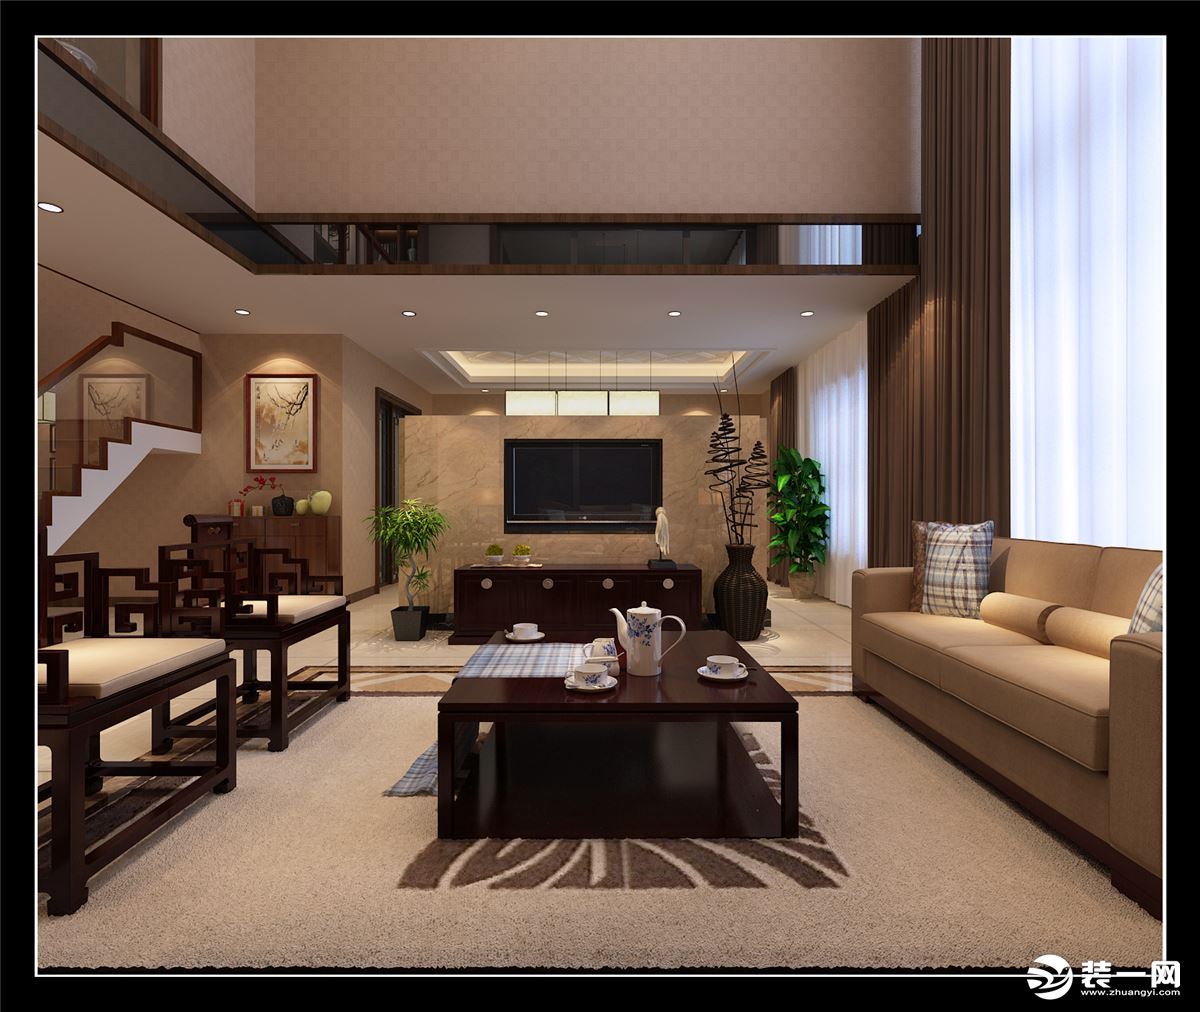 西安万科大明宫复式房子新中式风格设计方案,客厅